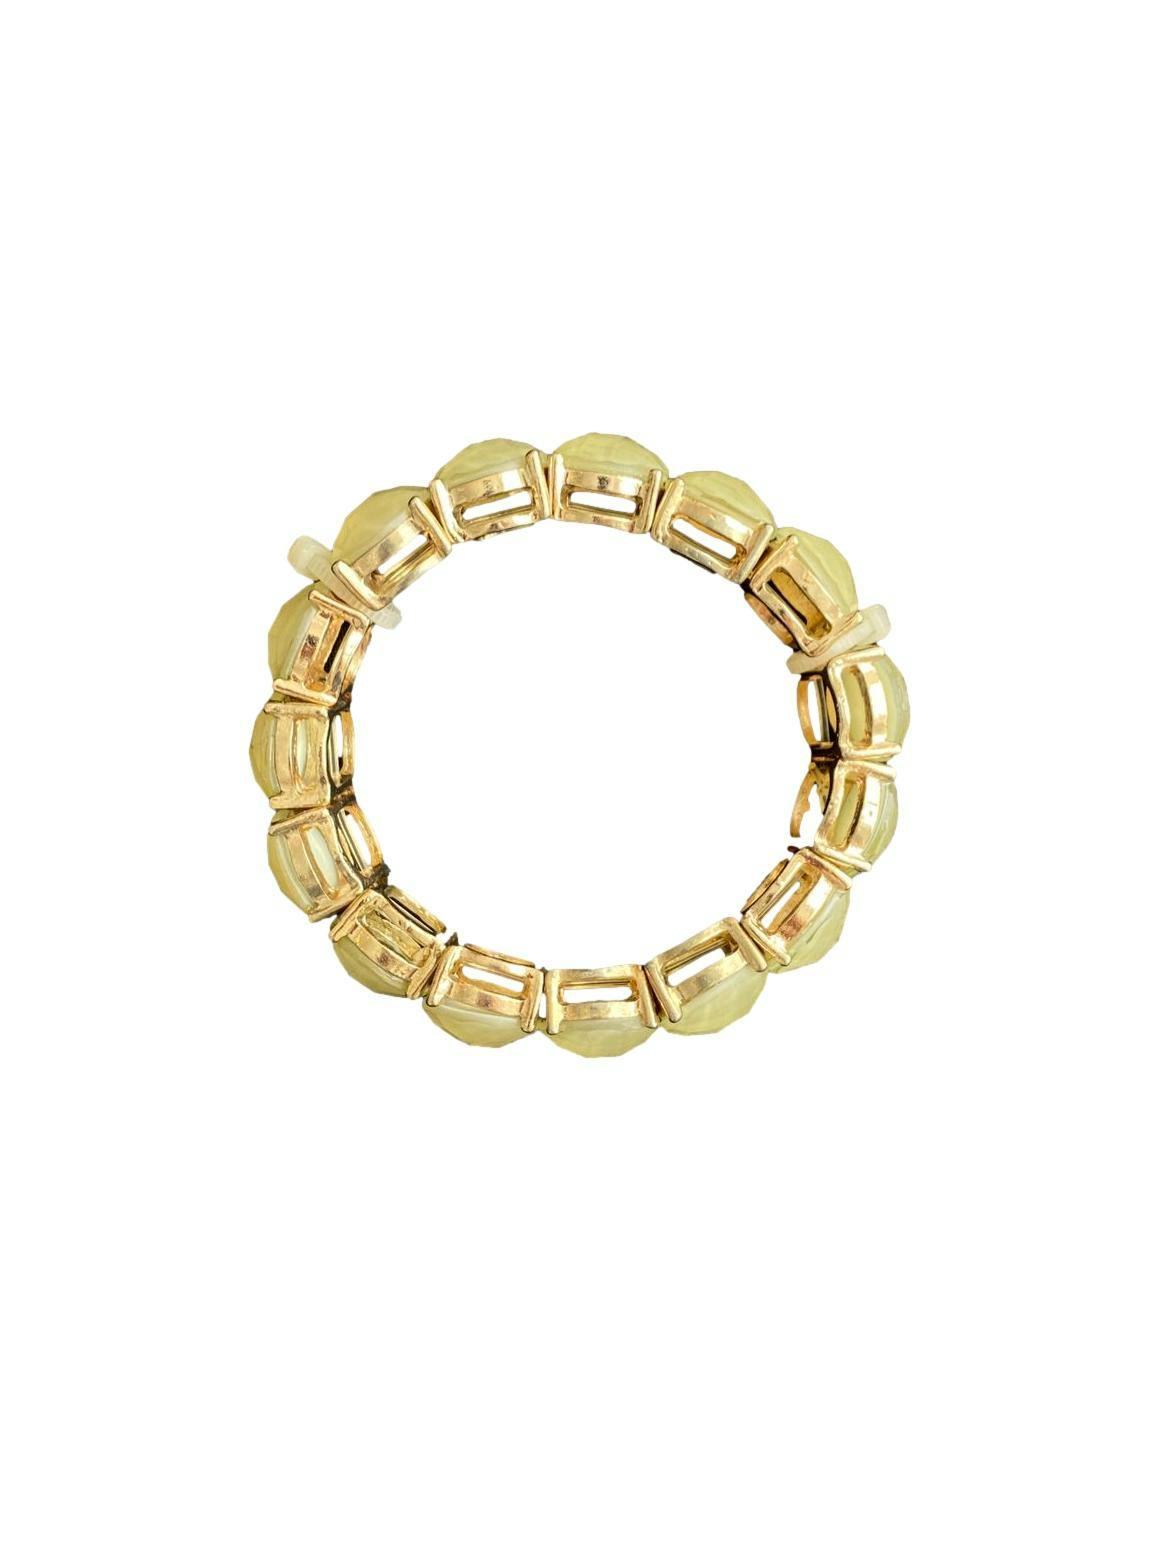 Conjunto collar y pulsera de pedrería circular verde con detalles dorados, cadena dorada